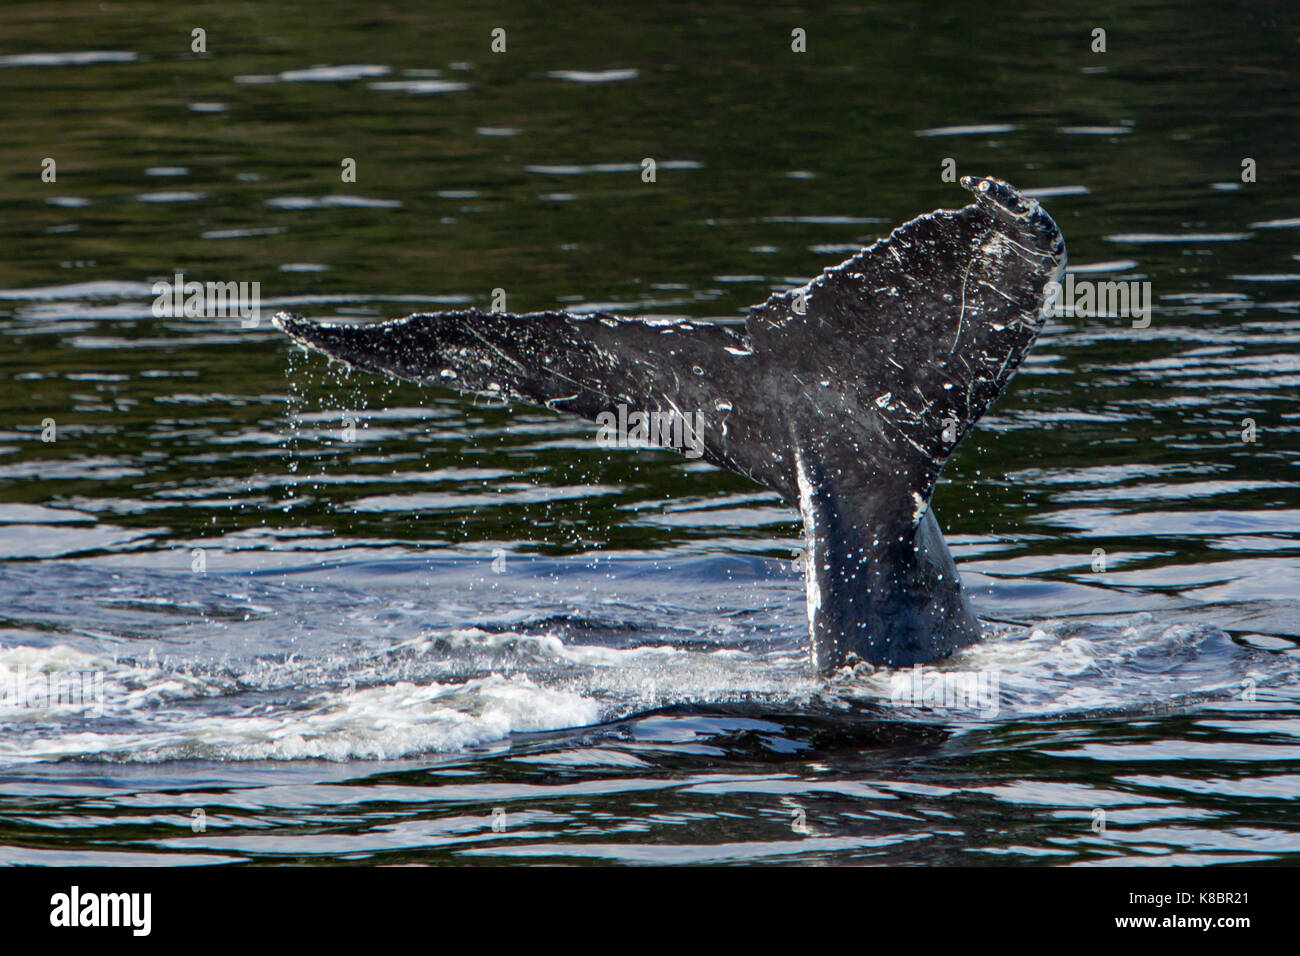 Una ballena jorobada levanta su cola o fluke antes de bucear profundo para unirse en una cooperativa para alimentar la red de burbujas en el sureste de Alaska Foto de stock